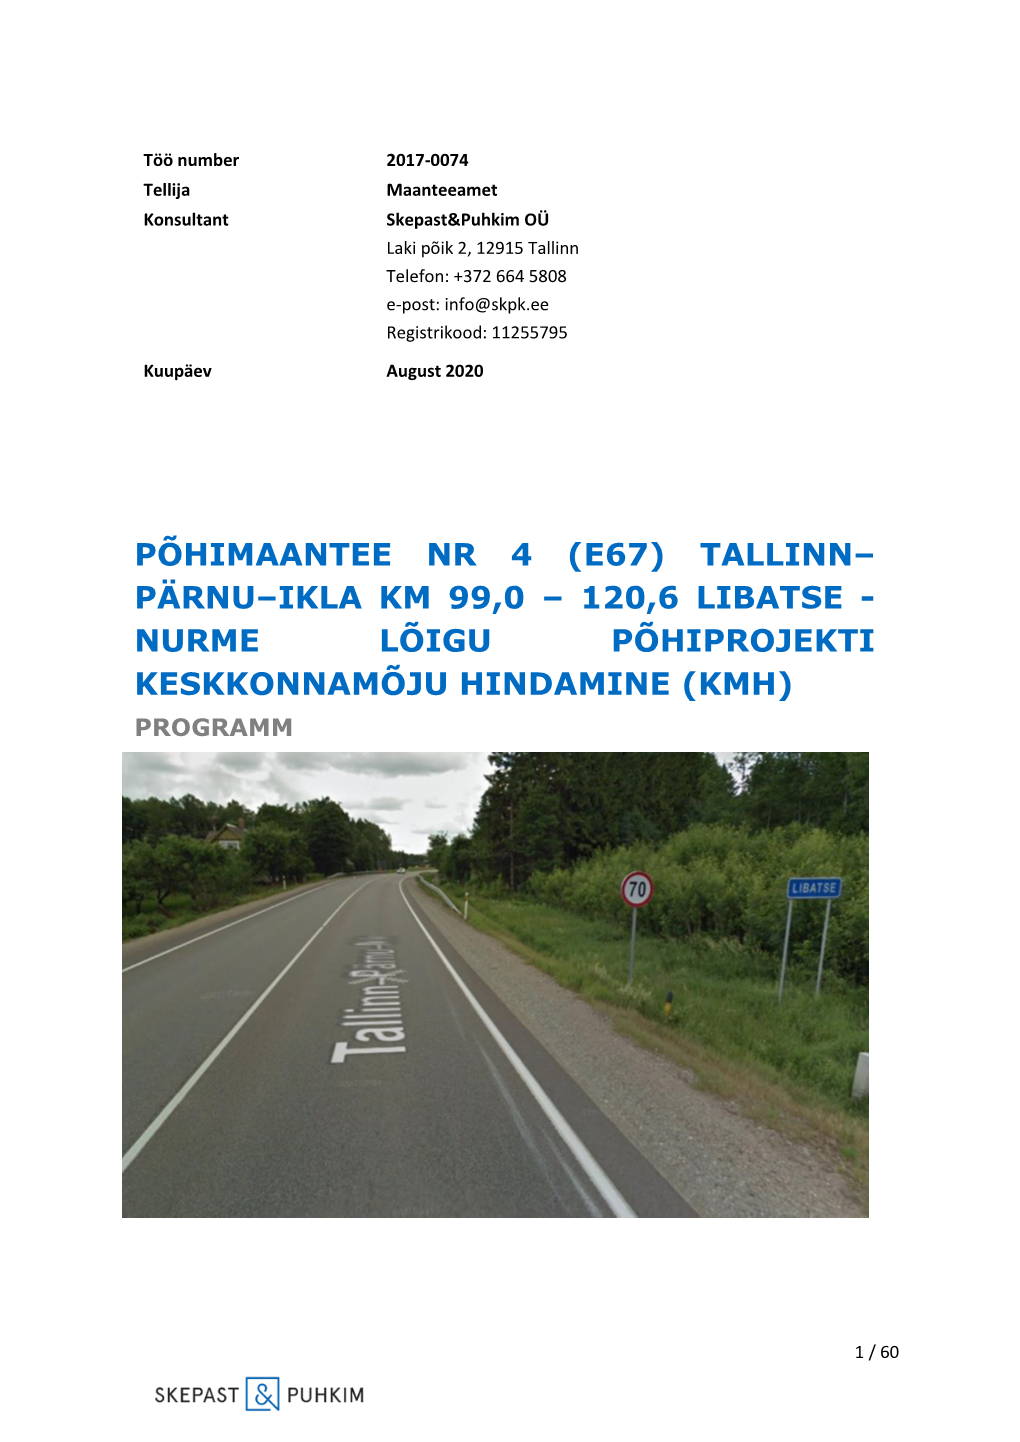 Tallinn– Pärnu–Ikla Km 99,0 – 120,6 Libatse - Nurme Lõigu Põhiprojekti Keskkonnamõju Hindamine (Kmh) Programm